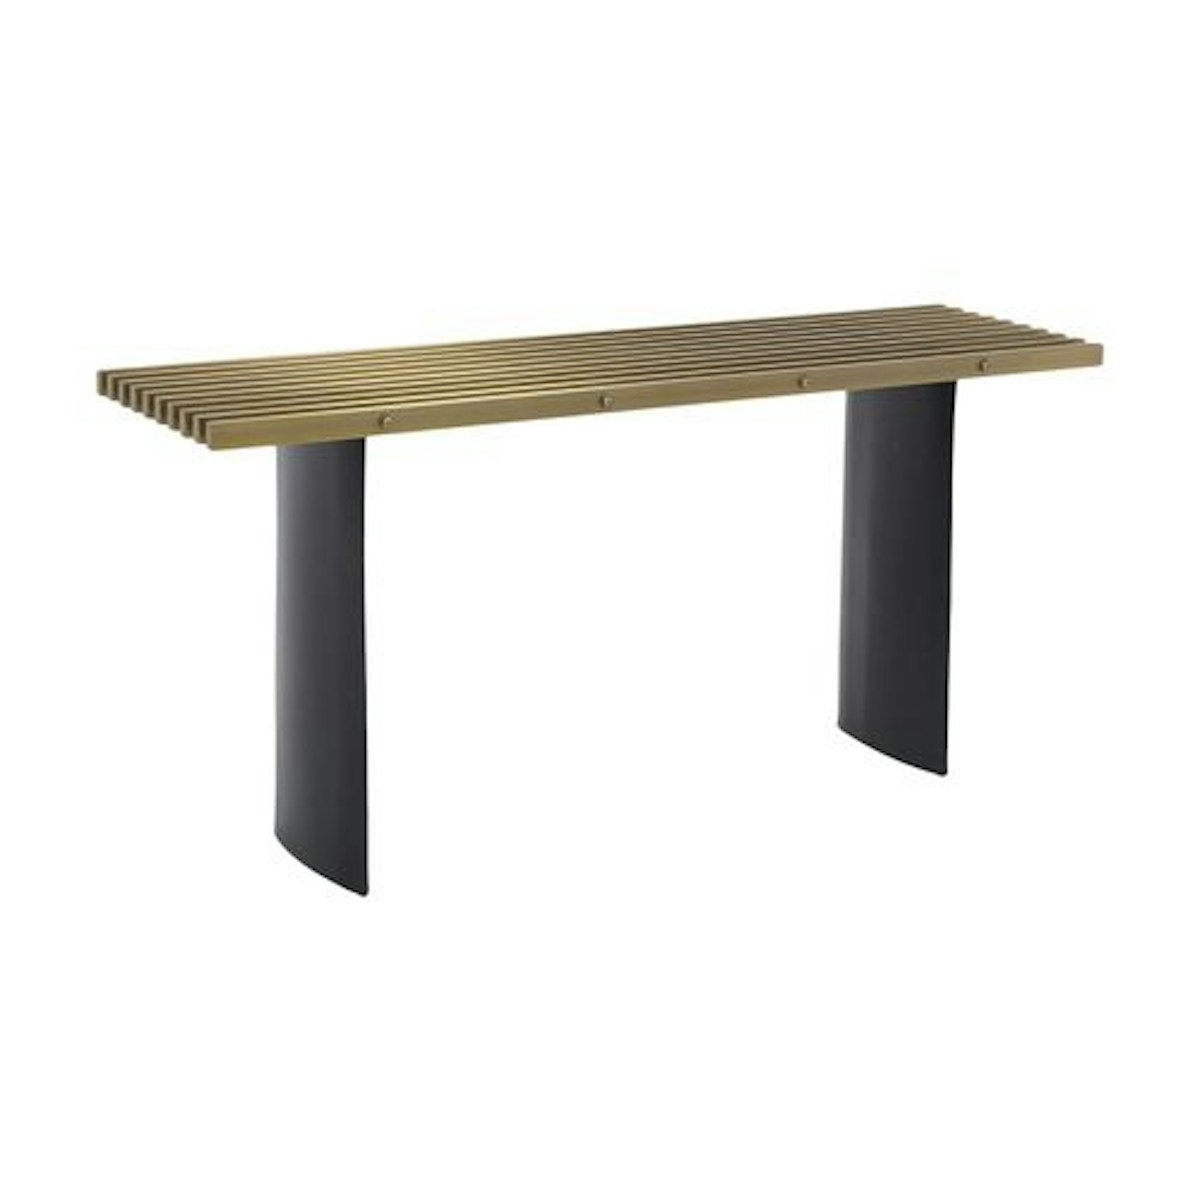 Black & Gold Eichholtz console table | Shop console tables online at LuxDeco.com